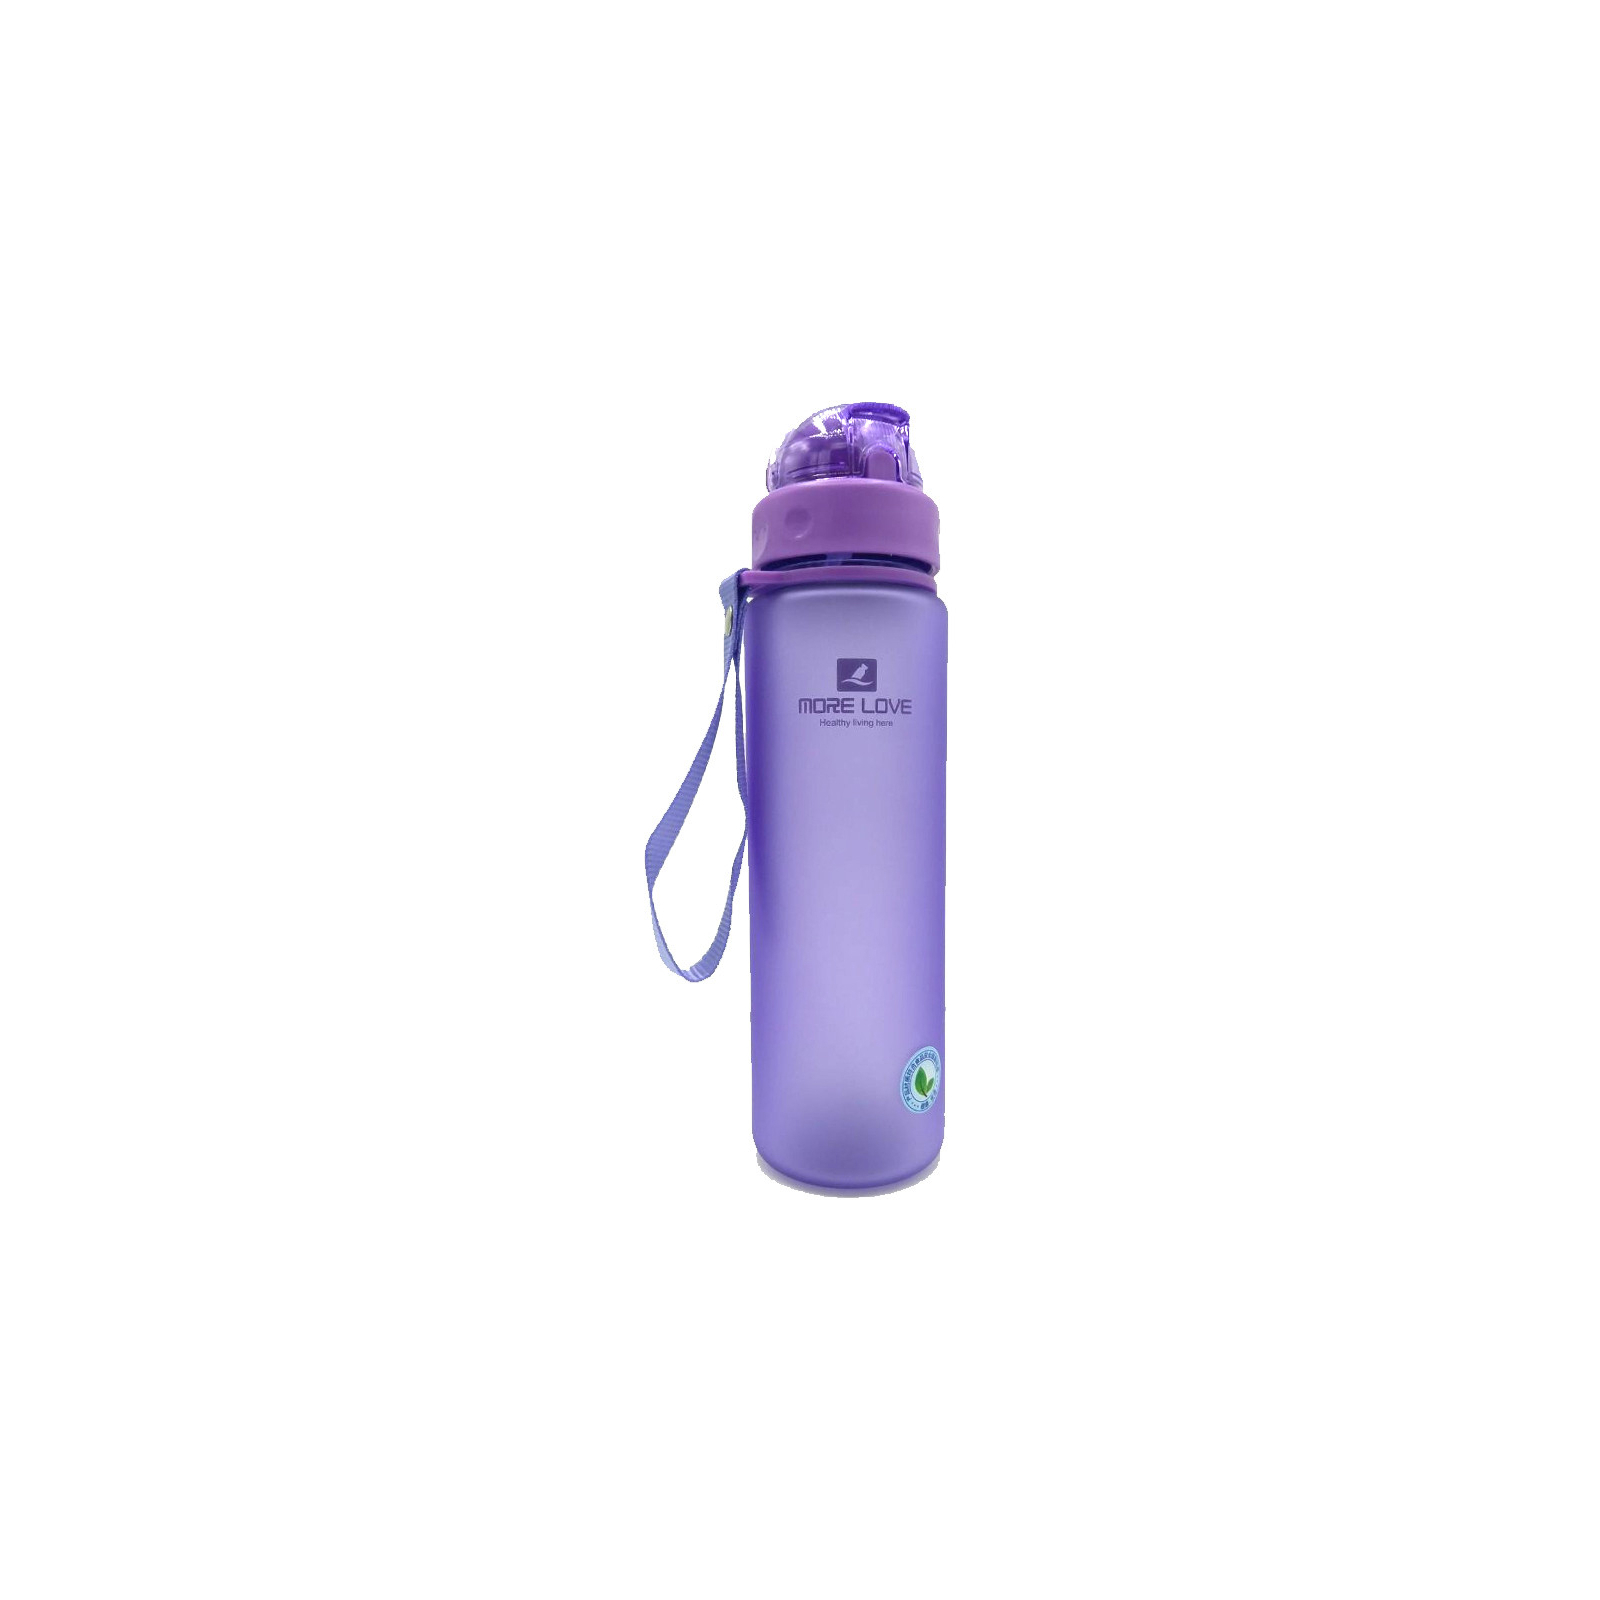 Бутылка для воды Casno 560 мл MX-5029 Блакитна (MX-5029_Blue) изображение 2